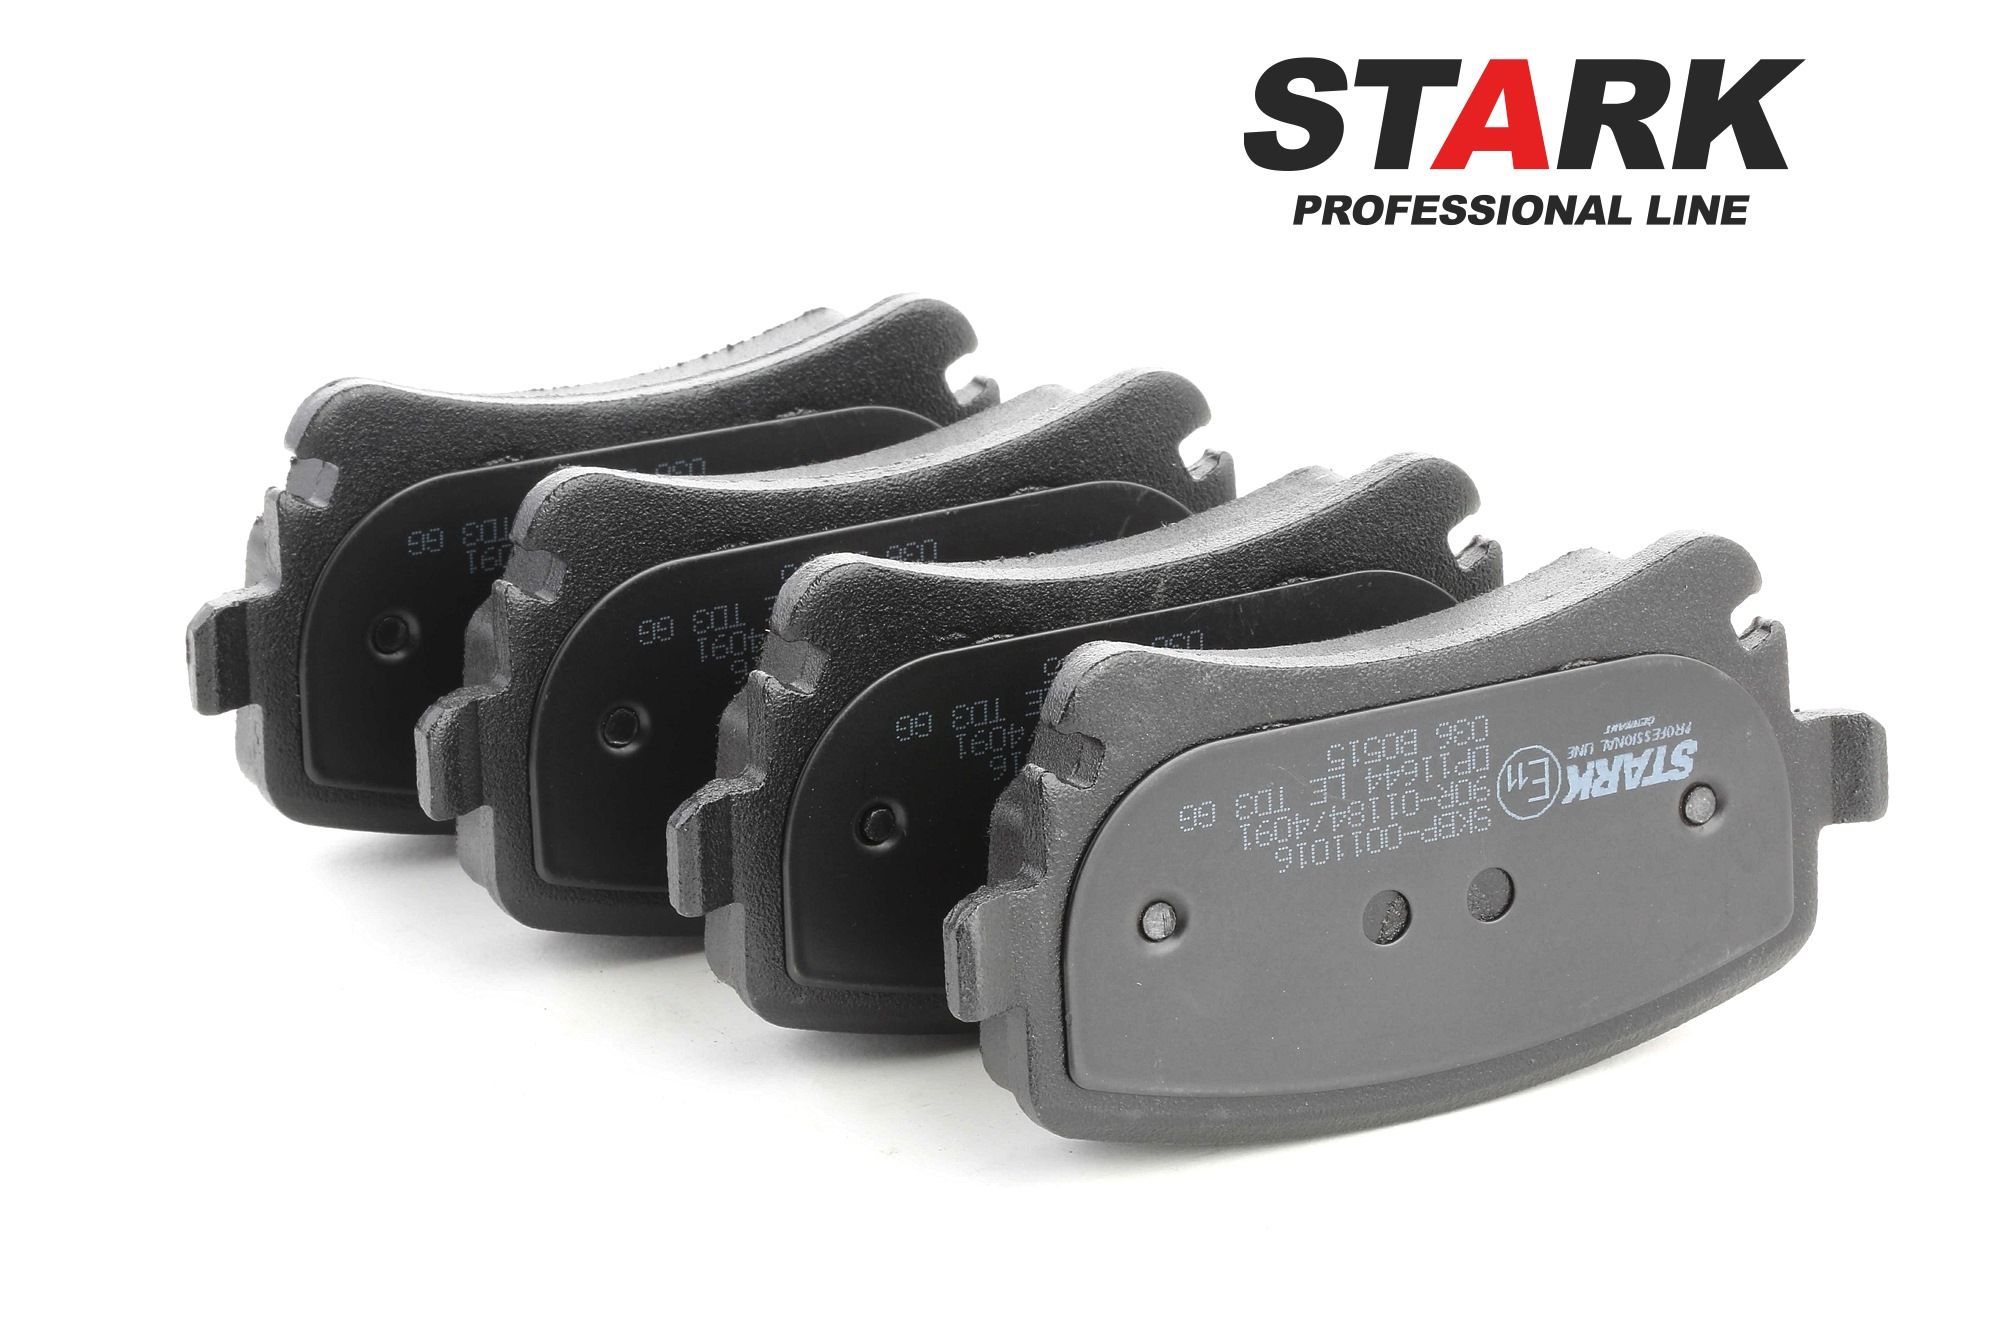 SKBP-0011016 STARK Hinterachse, für Verschleißwarnanzeiger vorbereitet, Foto entspricht Lieferumfang Höhe: 59mm, Breite: 116mm, Dicke/Stärke: 18mm Bremsbelagsatz SKBP-0011016 günstig kaufen